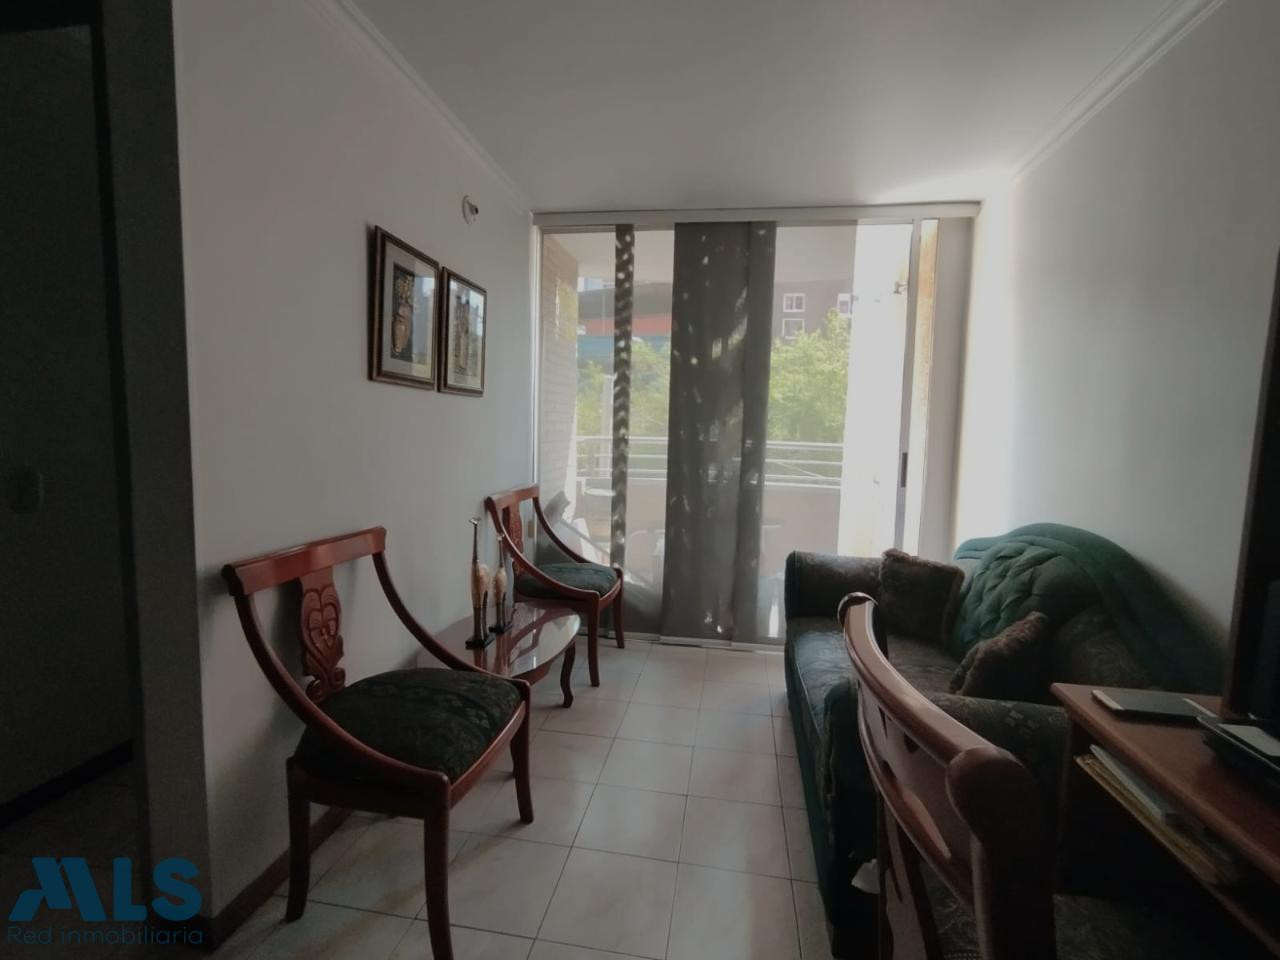 Venta de apartamento ubicación central en Medellín medellin - centro